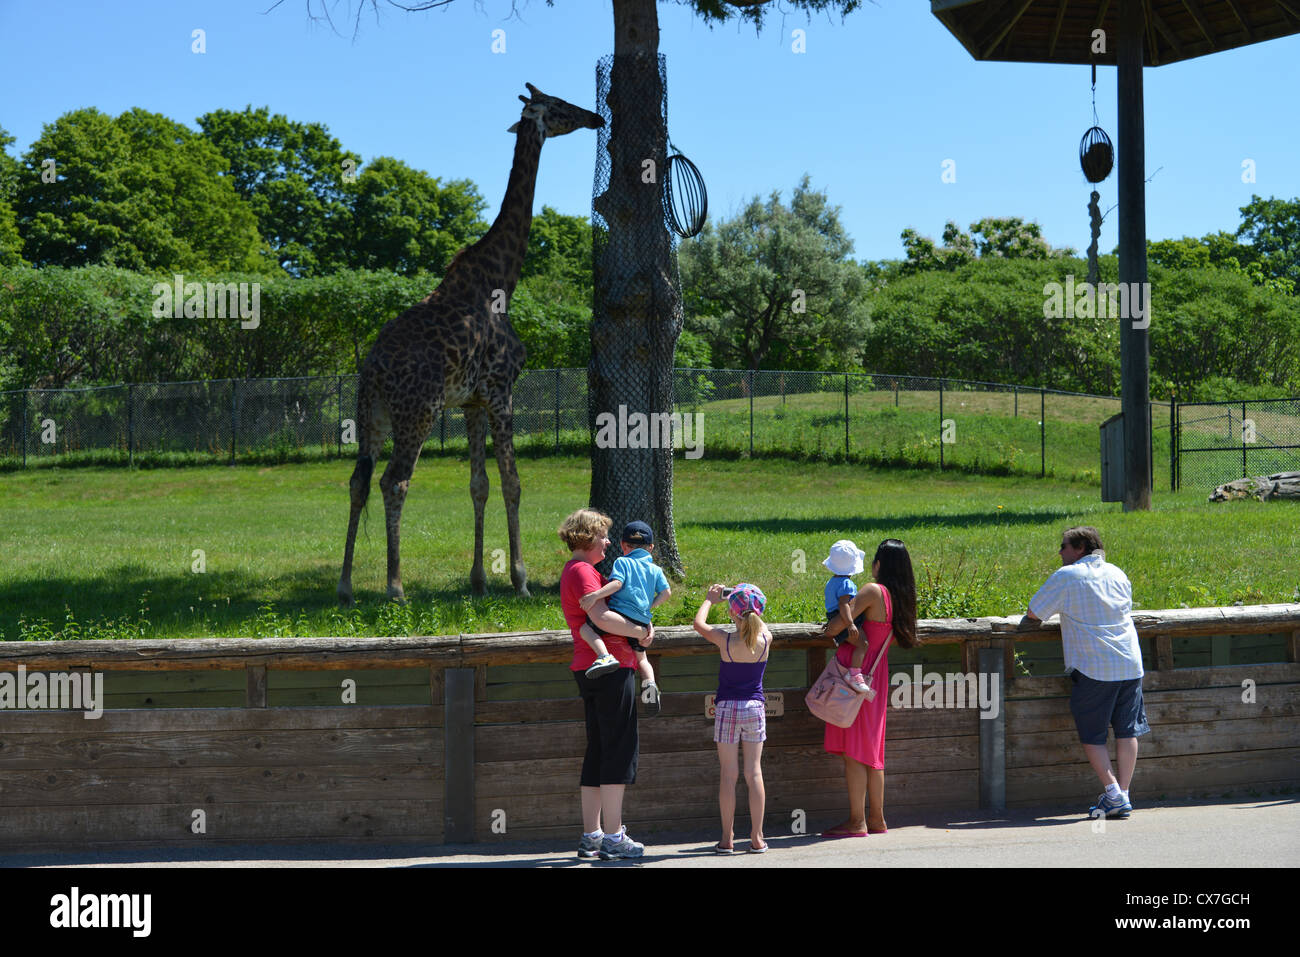 Dies ist ein Bild einer Giraffe im Zoo von Toronto Stockfoto